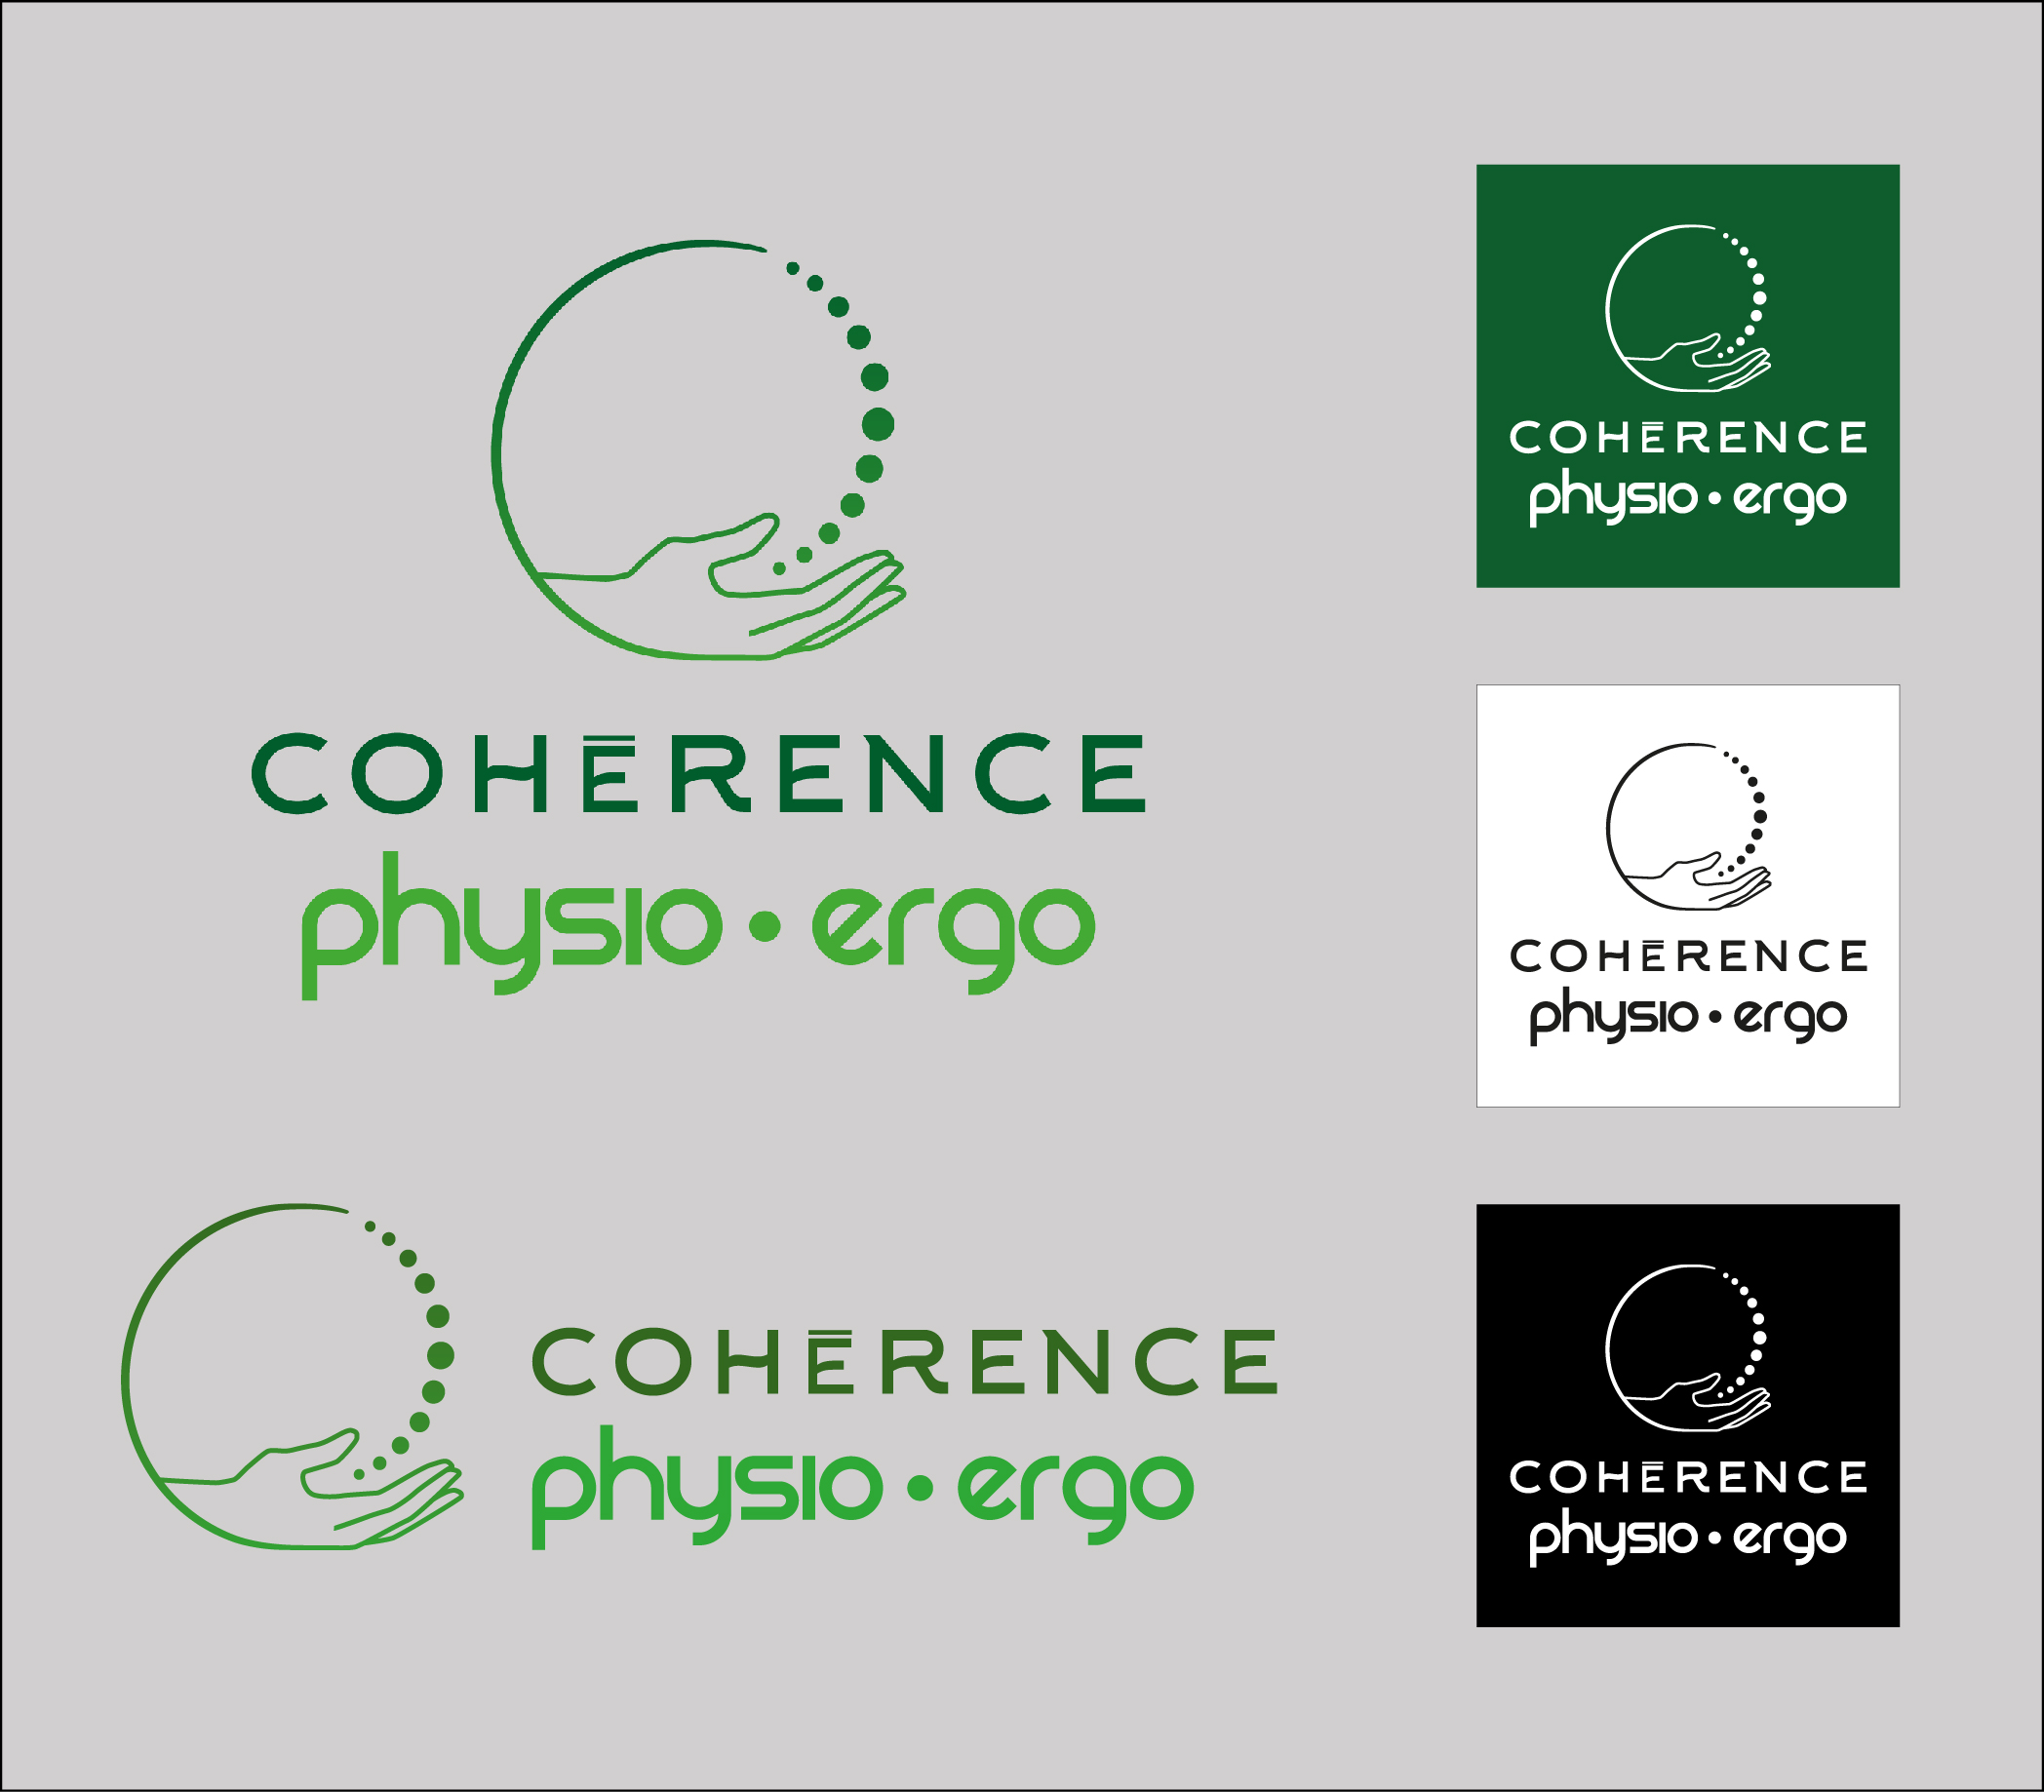 coherence-physio-ergo-1